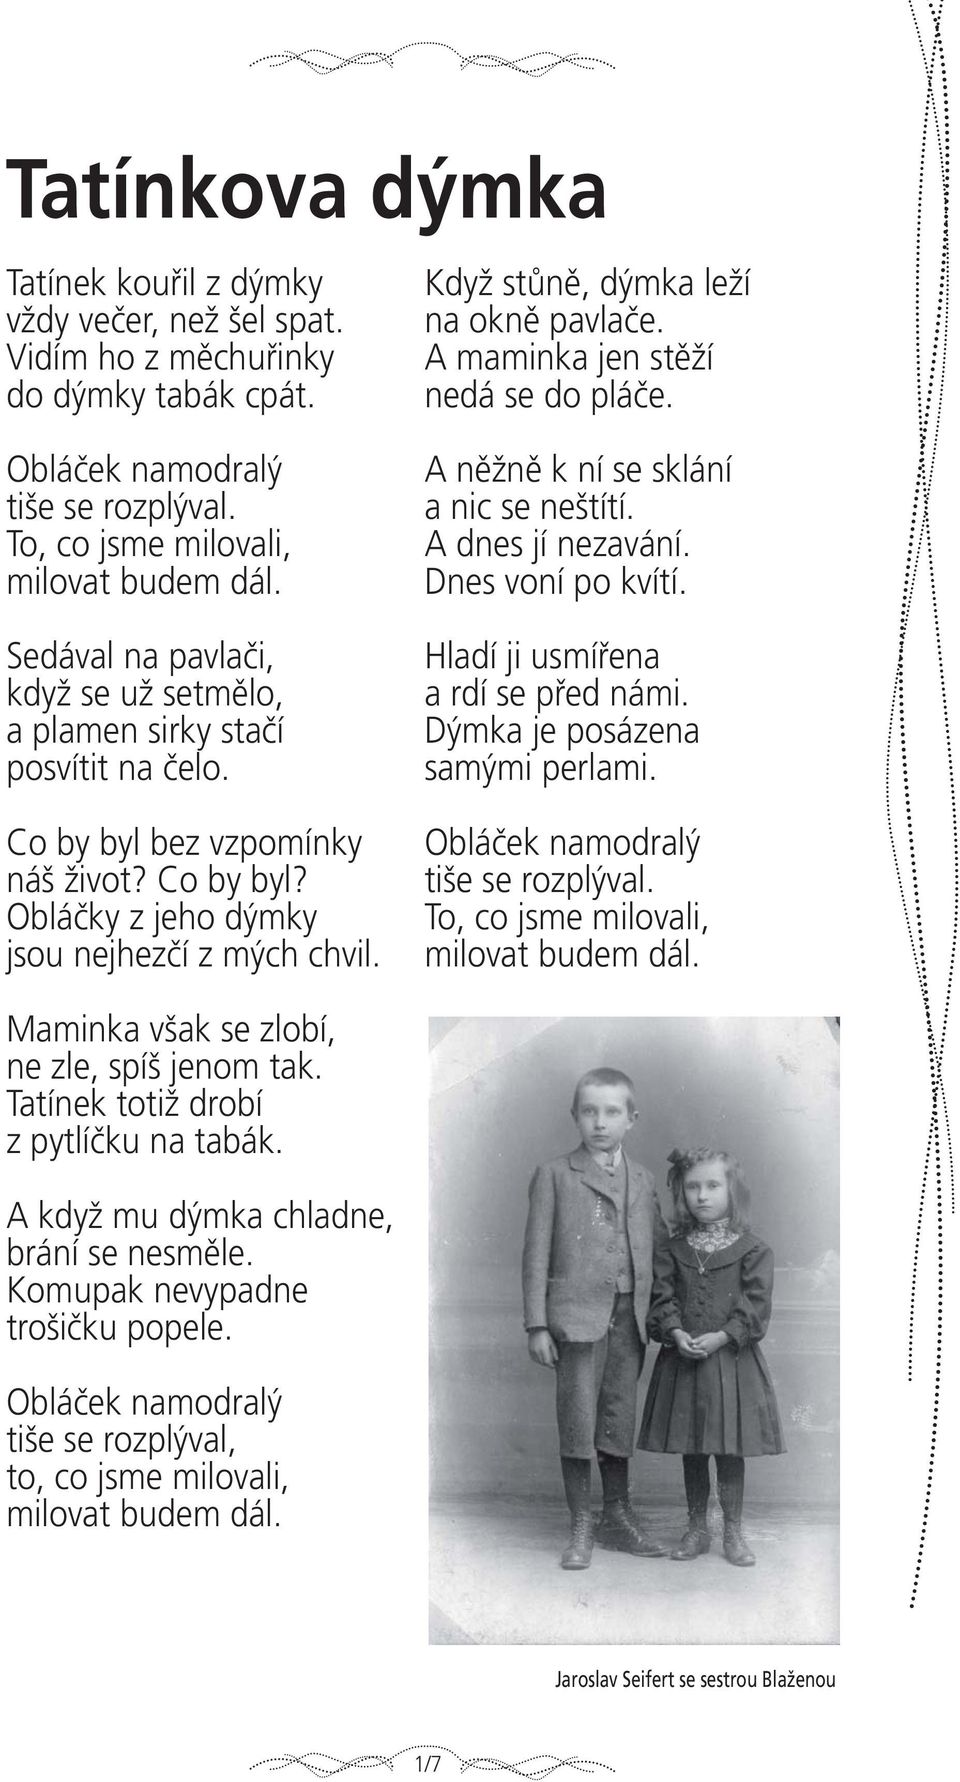 Jaroslav Seifert. slovem i obrazem 1/1 - PDF Stažení zdarma